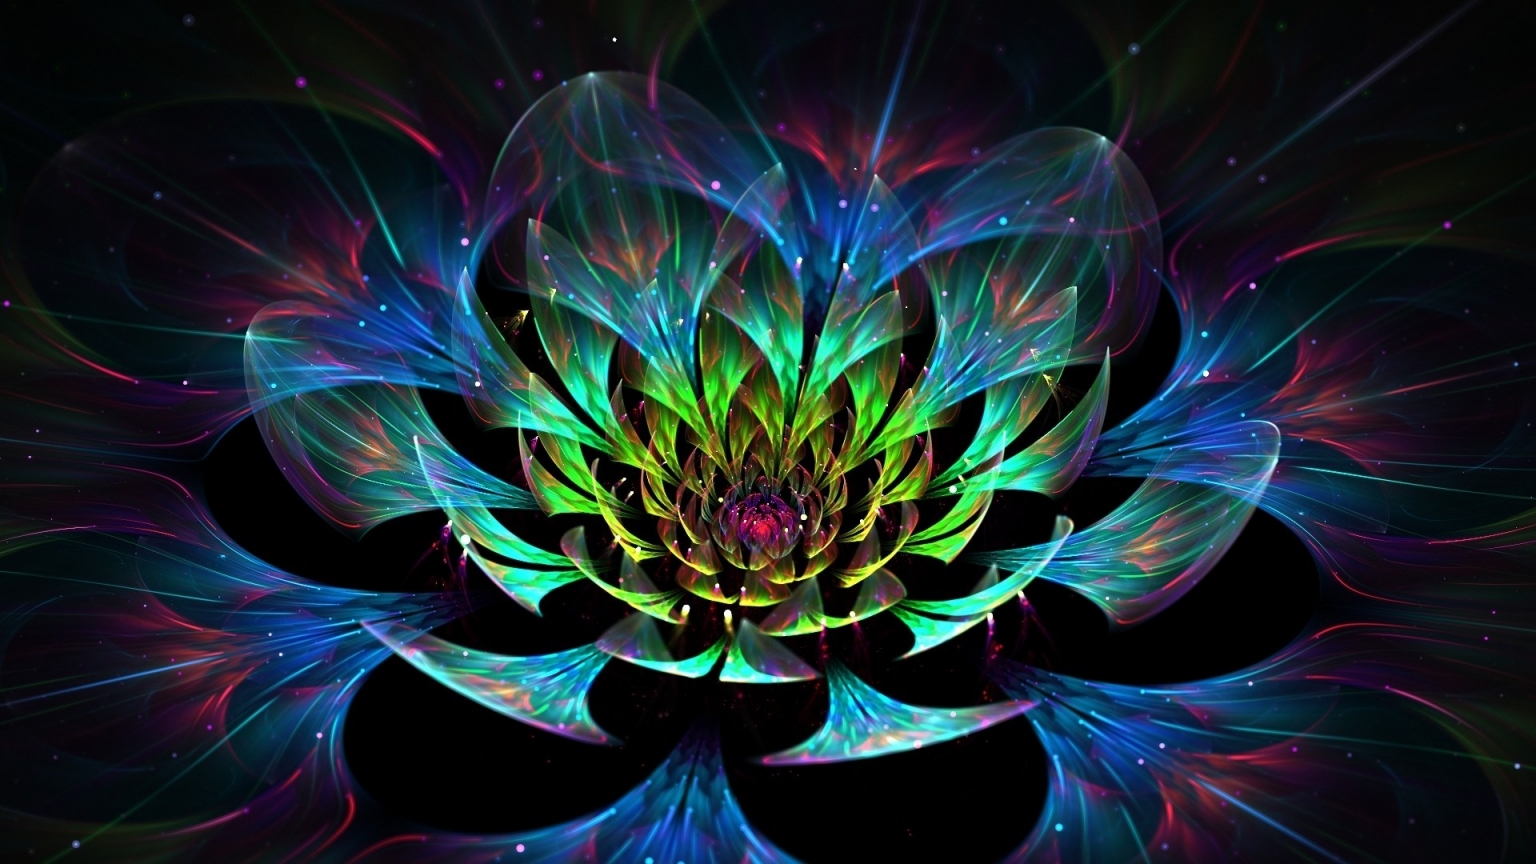 3D Lotus Flower for 1536 x 864 HDTV resolution